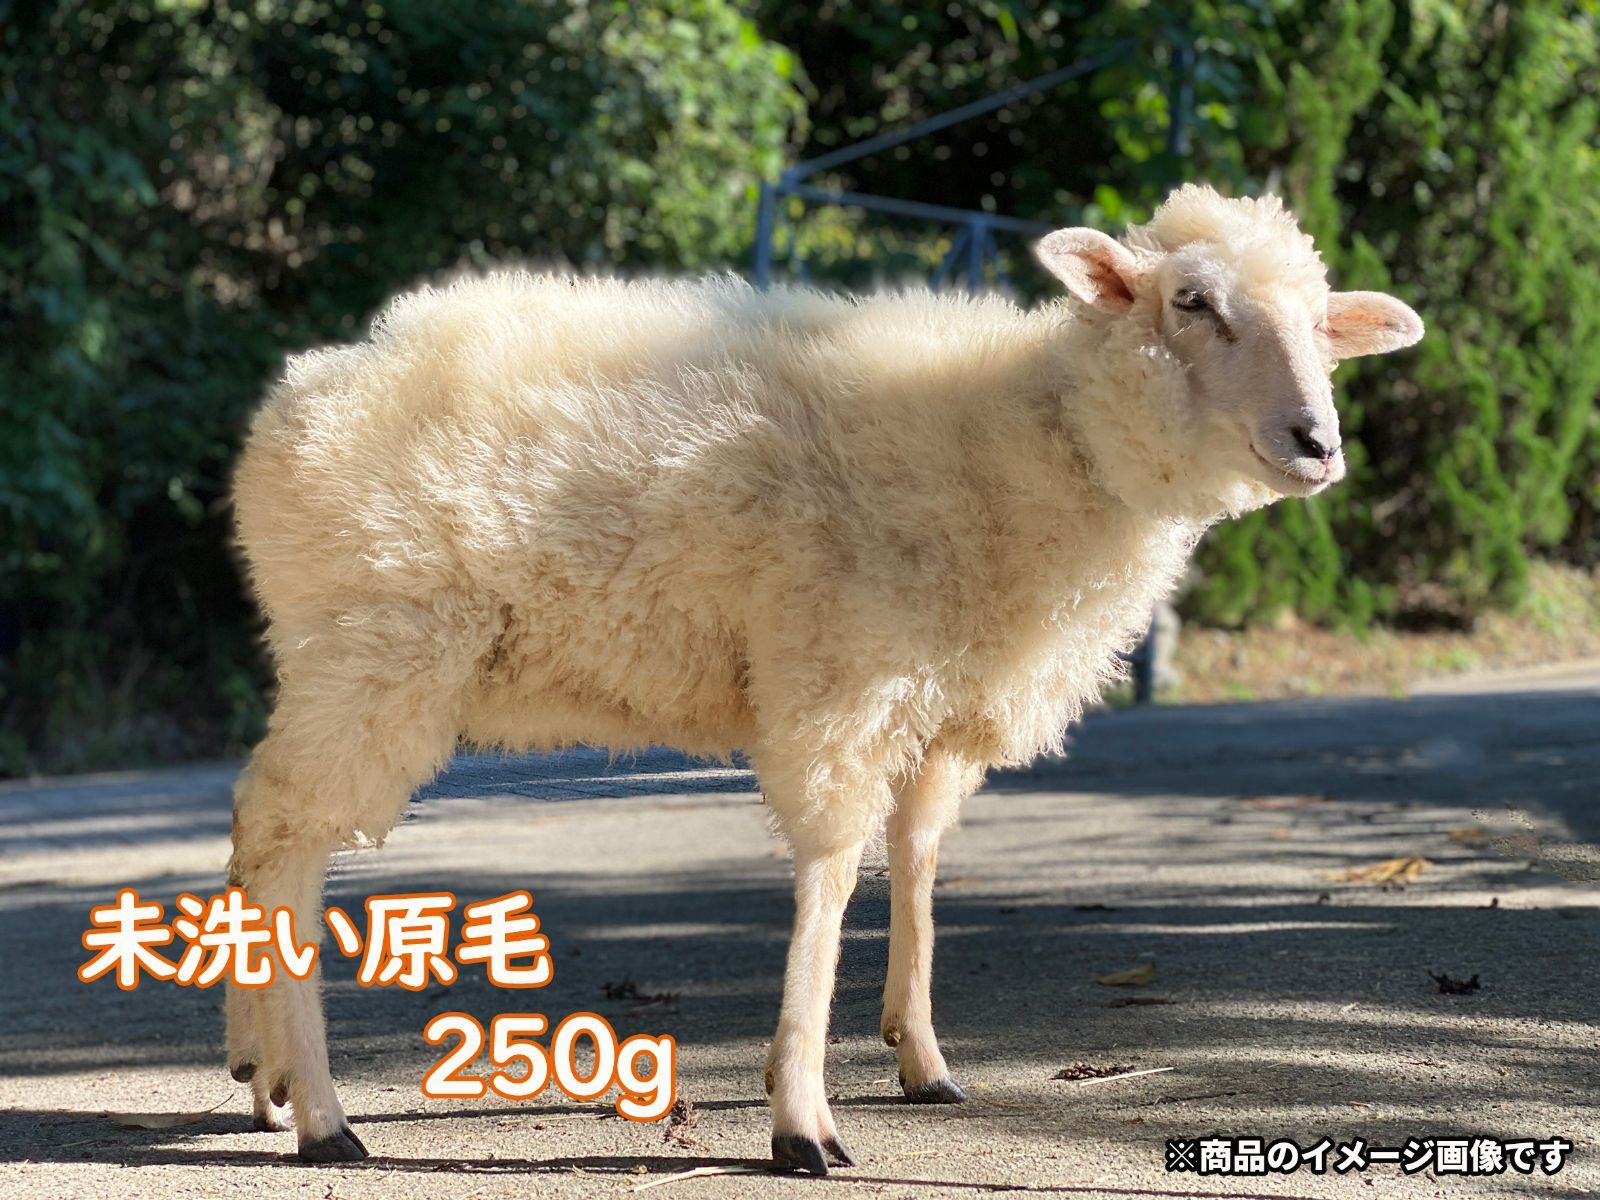 羊毛⭐︎コリデール国産⭐︎原毛⭐︎未洗い | www.enfoquevallenato.com